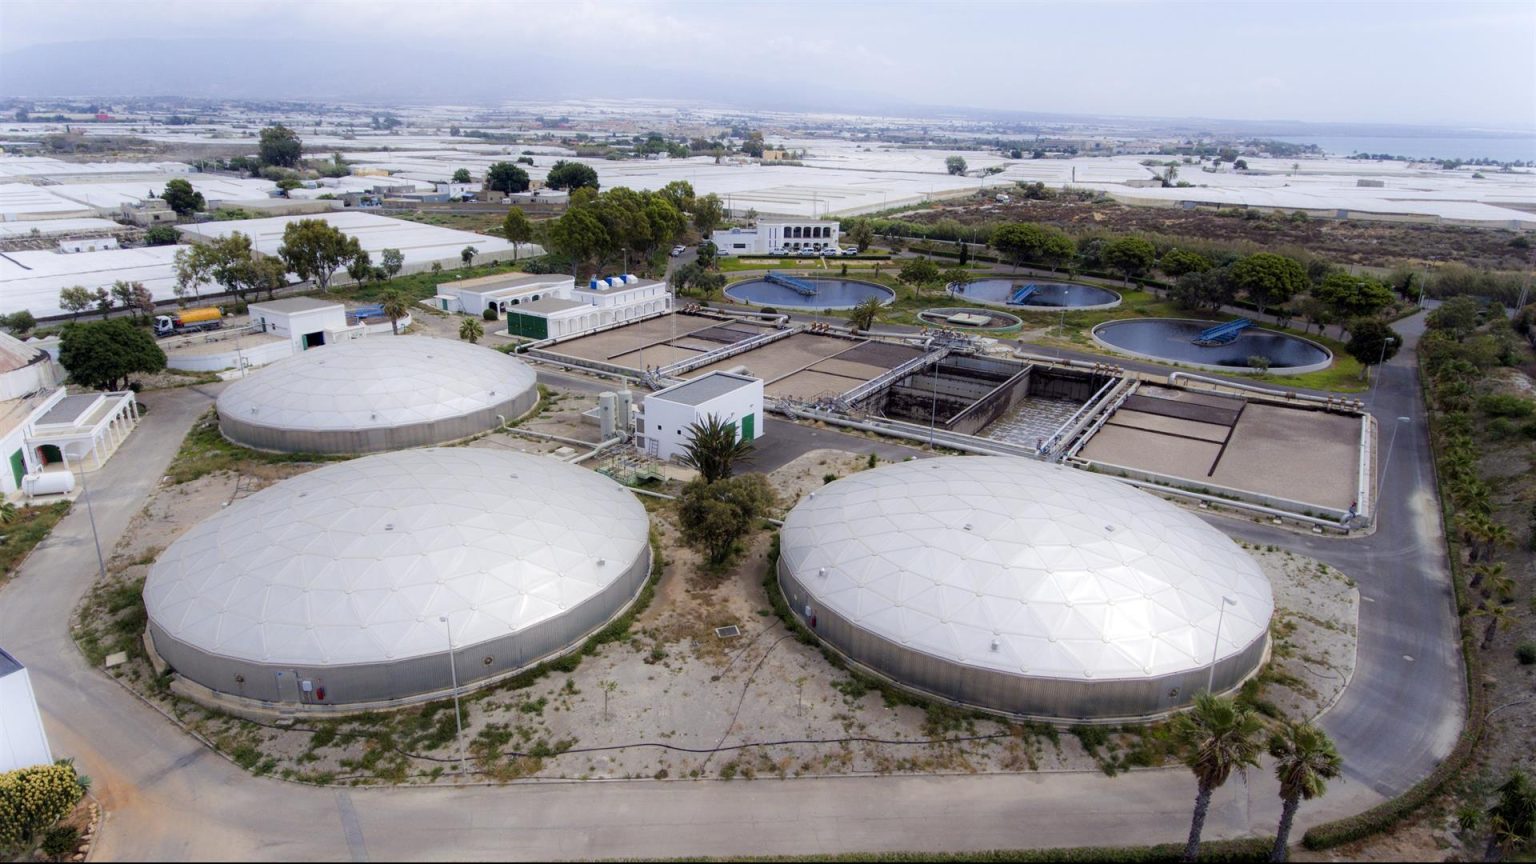 Aqualia (FCC) y Acciona se adjudican la gestión del agua en Arabia Saudí por 94 millones de euros